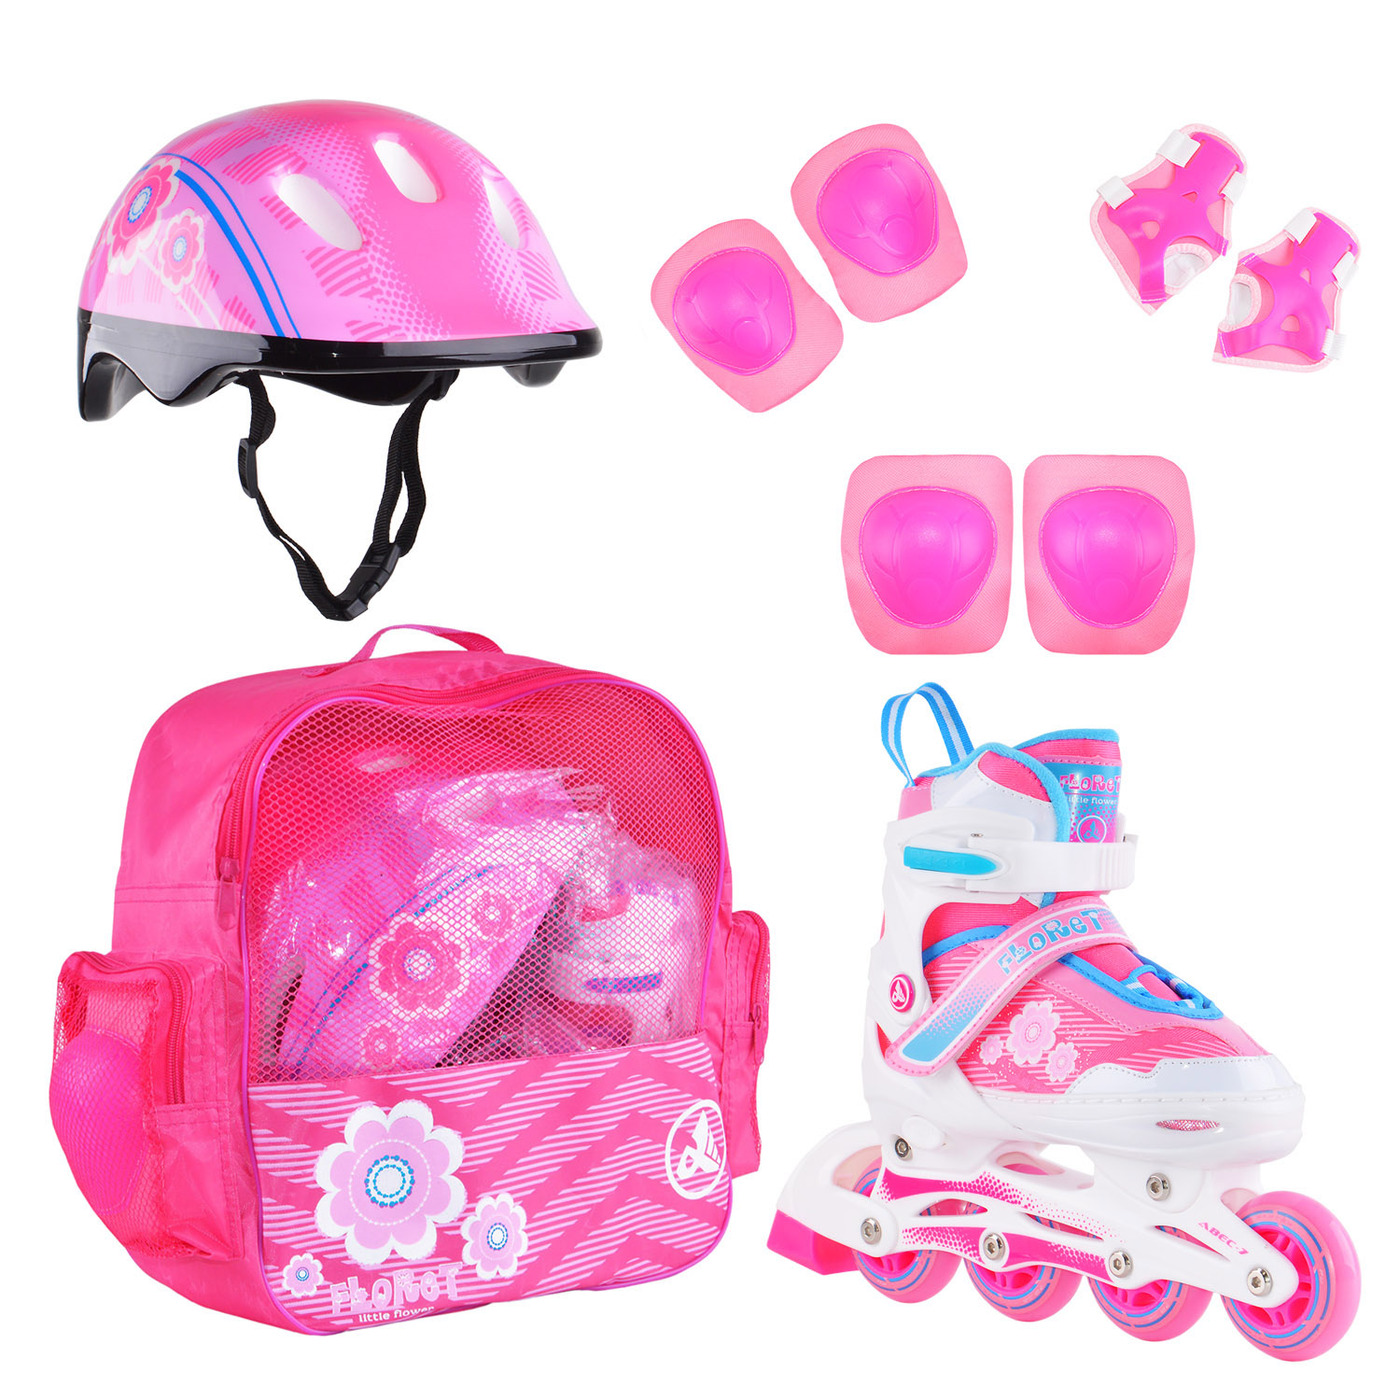 Раздвижные роликовые коньки Alpha Caprice FLORET Wh/Pink/Bl, шлем, защита, сумка S:31-34 раздвижные коньки rgx cosmo pink